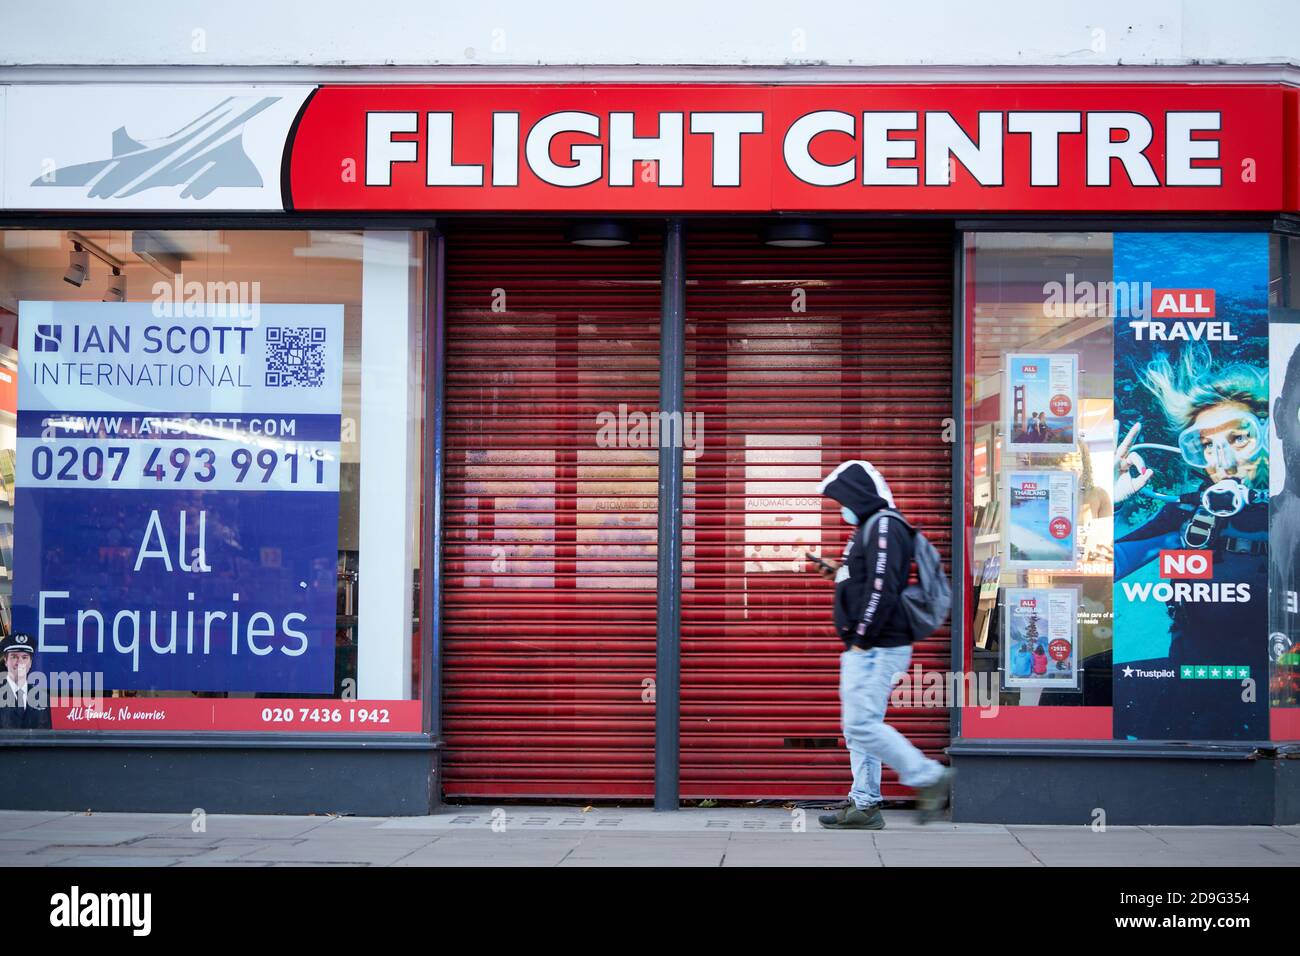 Londra, Regno Unito. - 4 Nov 2020: Un negozio Shuttered Flight Center su Oxford Street e l'annuncio per un nuovo inquilino. Dall'inizio della pandemia del coronavirus la compagnia di viaggi ha chiuso oltre 400 negozi in tutto il mondo. Foto Stock